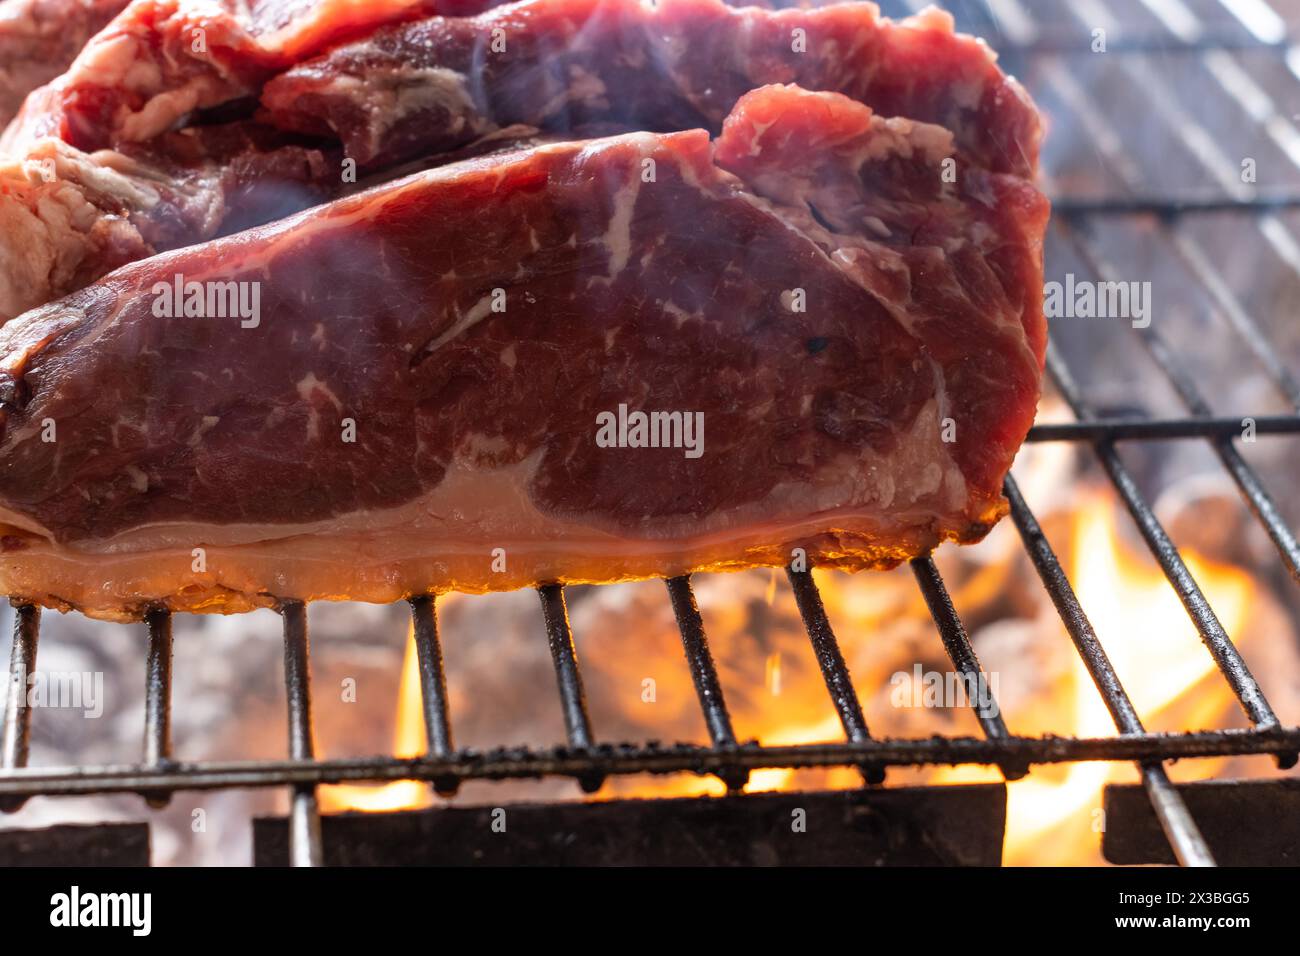 Vista ravvicinata di pezzi di carne cruda tagliati come bistecche su una griglia con il fuoco che brucia sotto Foto Stock